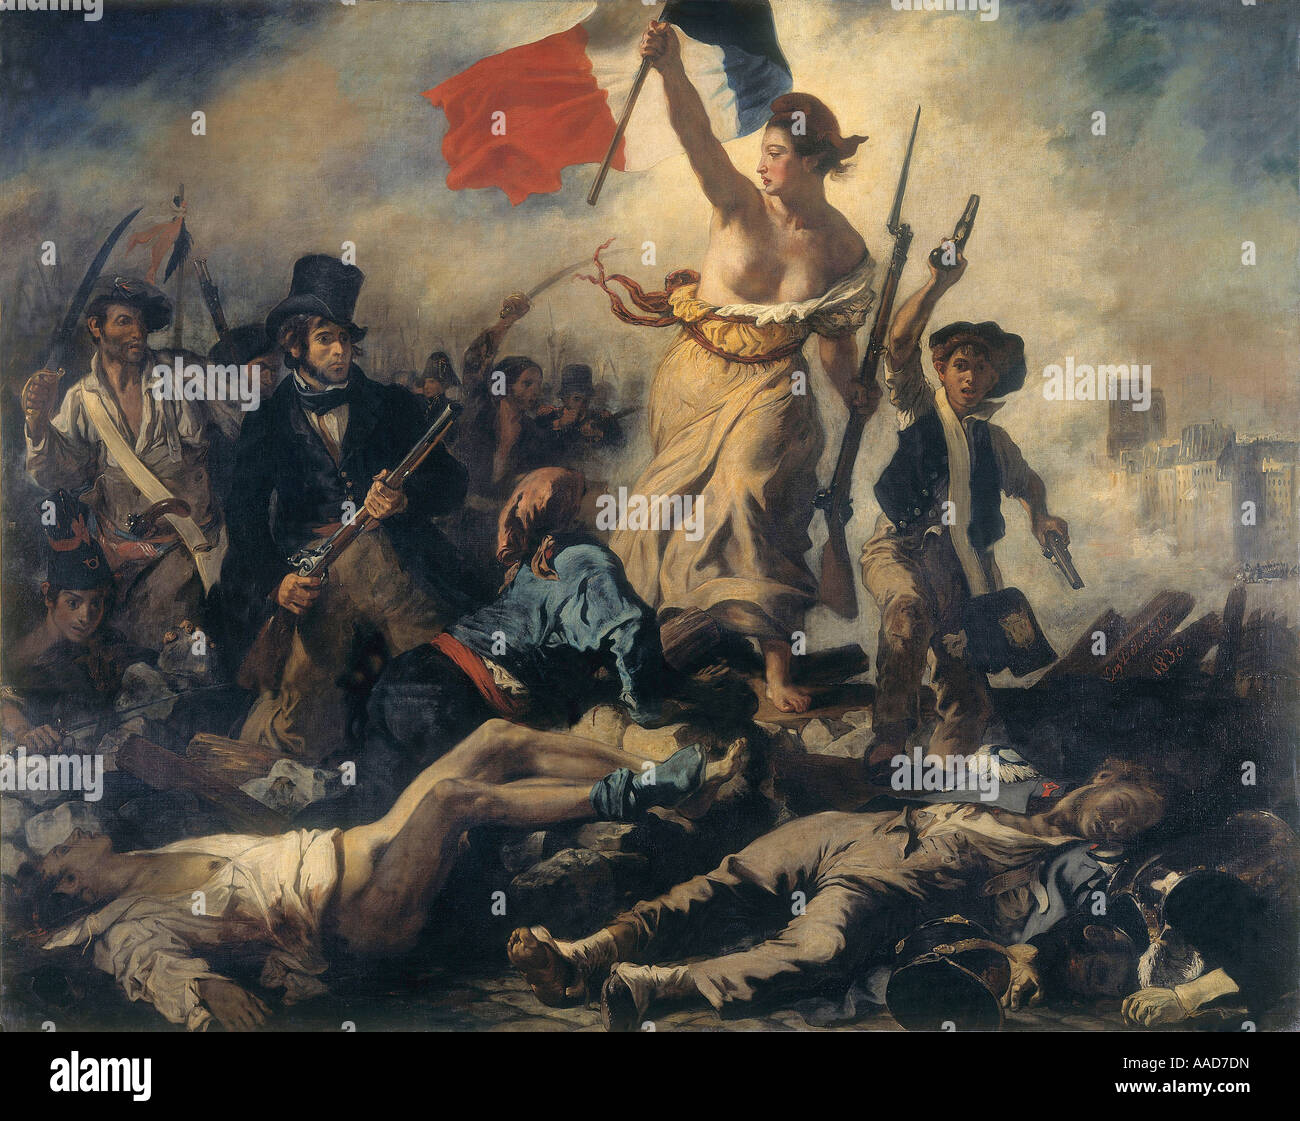 9FK 1830 7 27 A2 C D Delacroix sterben Freiheit Fuehrt Das Volk Delacroix Eugene 1798 1863 sterben Freiheit Fuehrt Das Volk 1830 Allegor Stockfoto